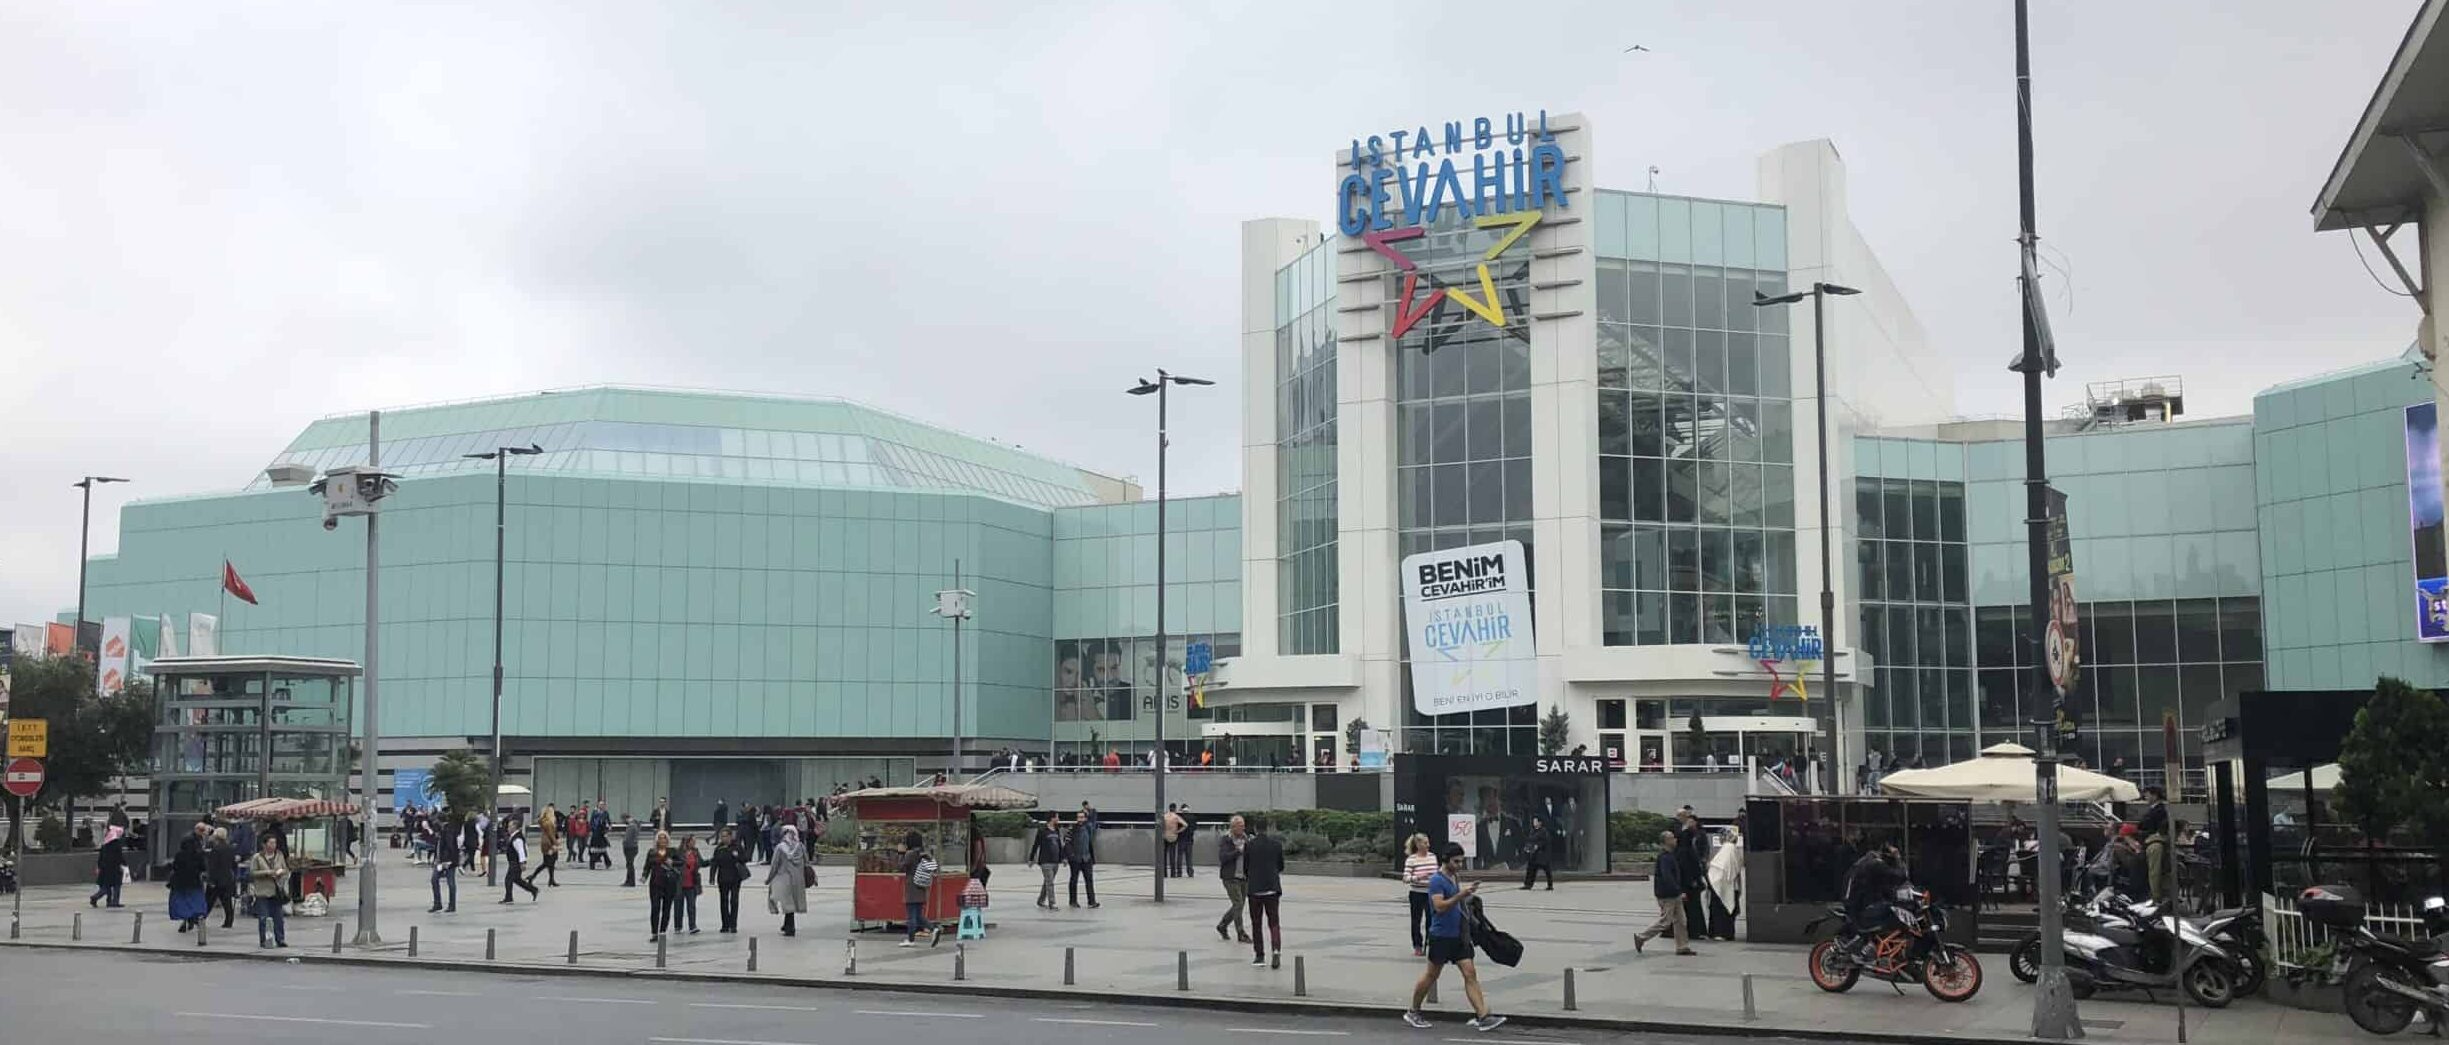 Istanbul Cevahir Mall in Şişli, Istanbul, Turkey